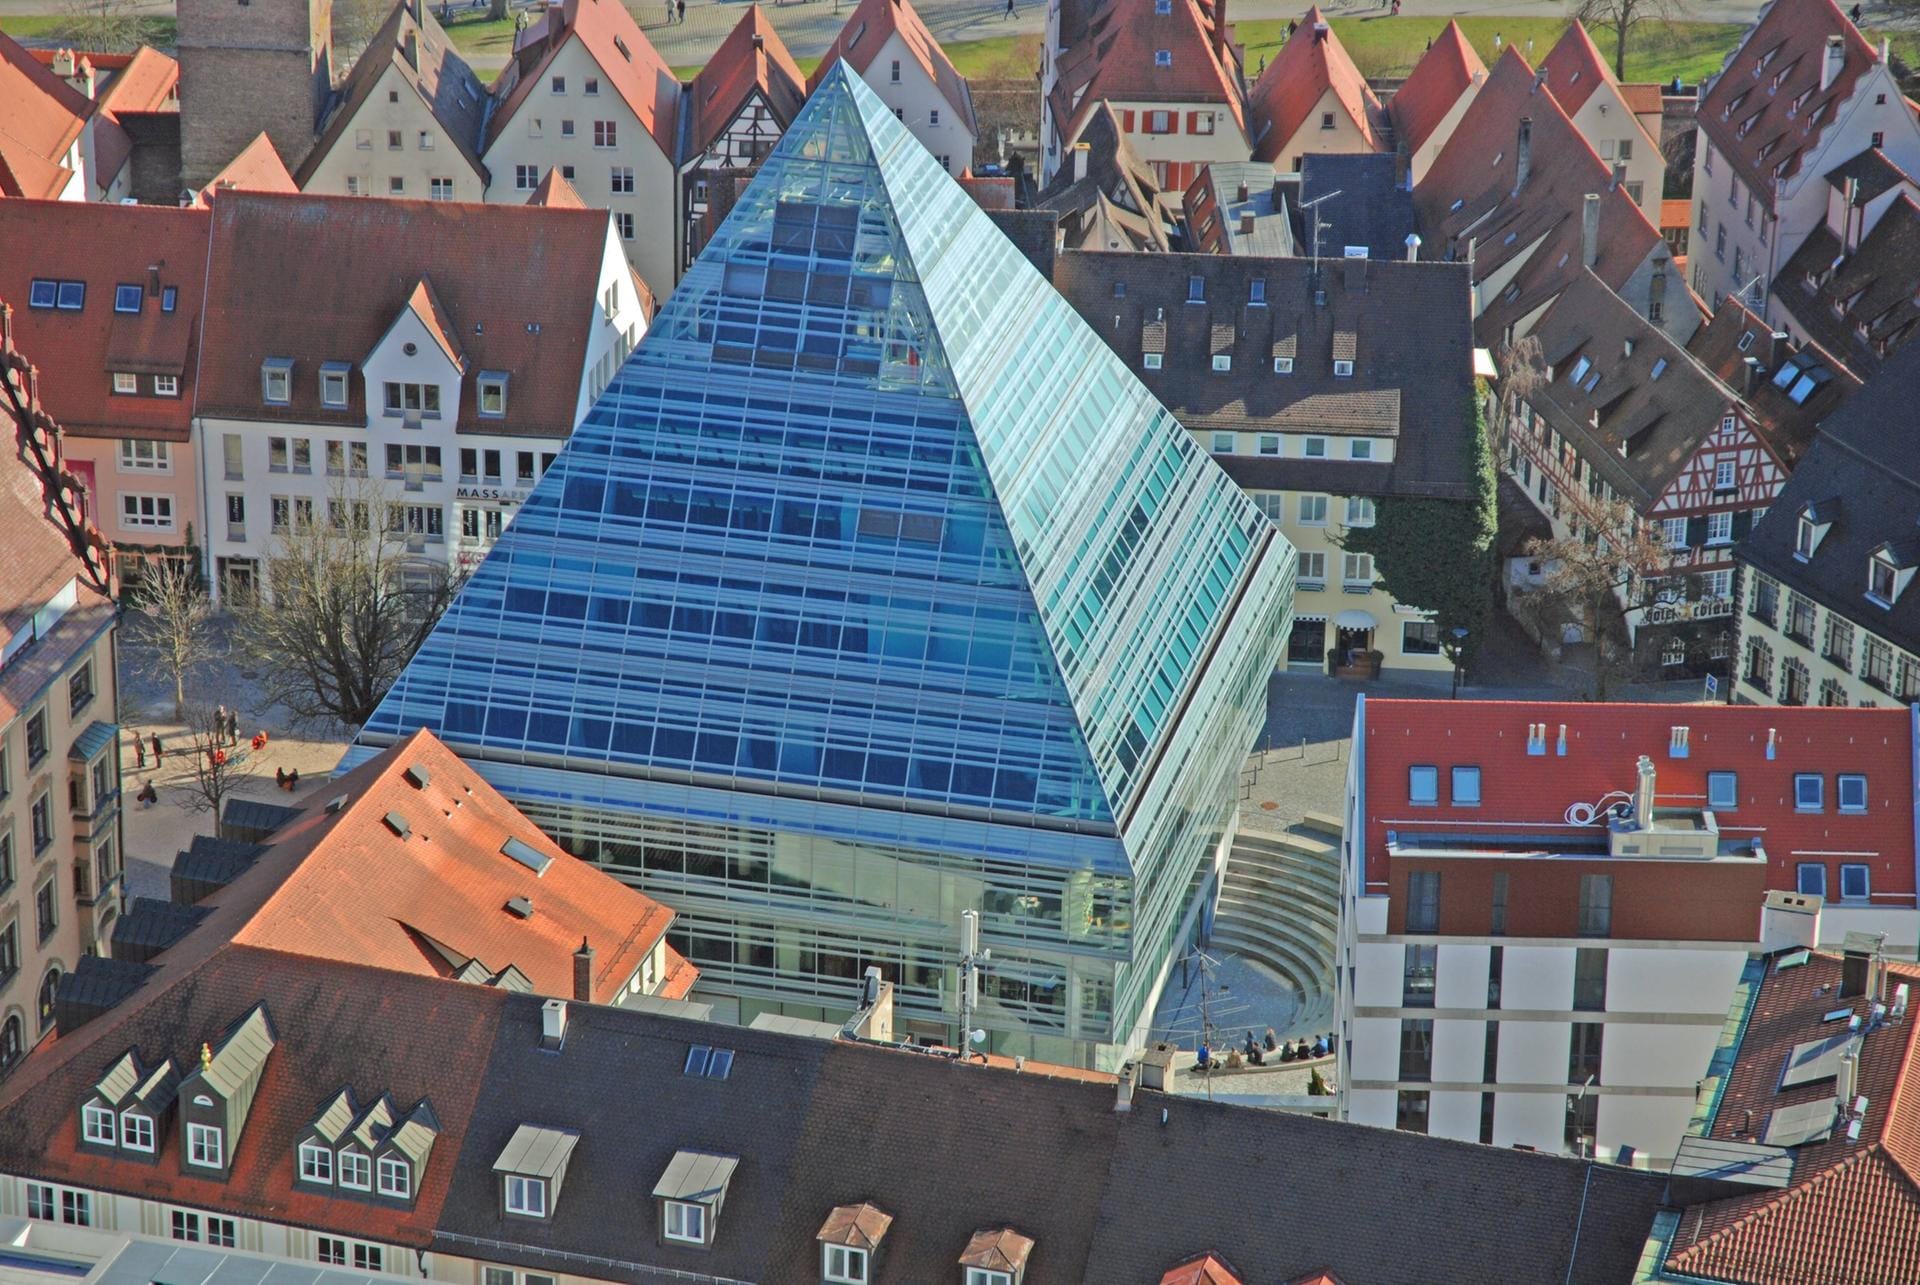 Ulm, Baden-Württemberg: Die neue Stadtbibliothek ist eine Pyramide aus Glas mitten in der Ulmer Altstadt.